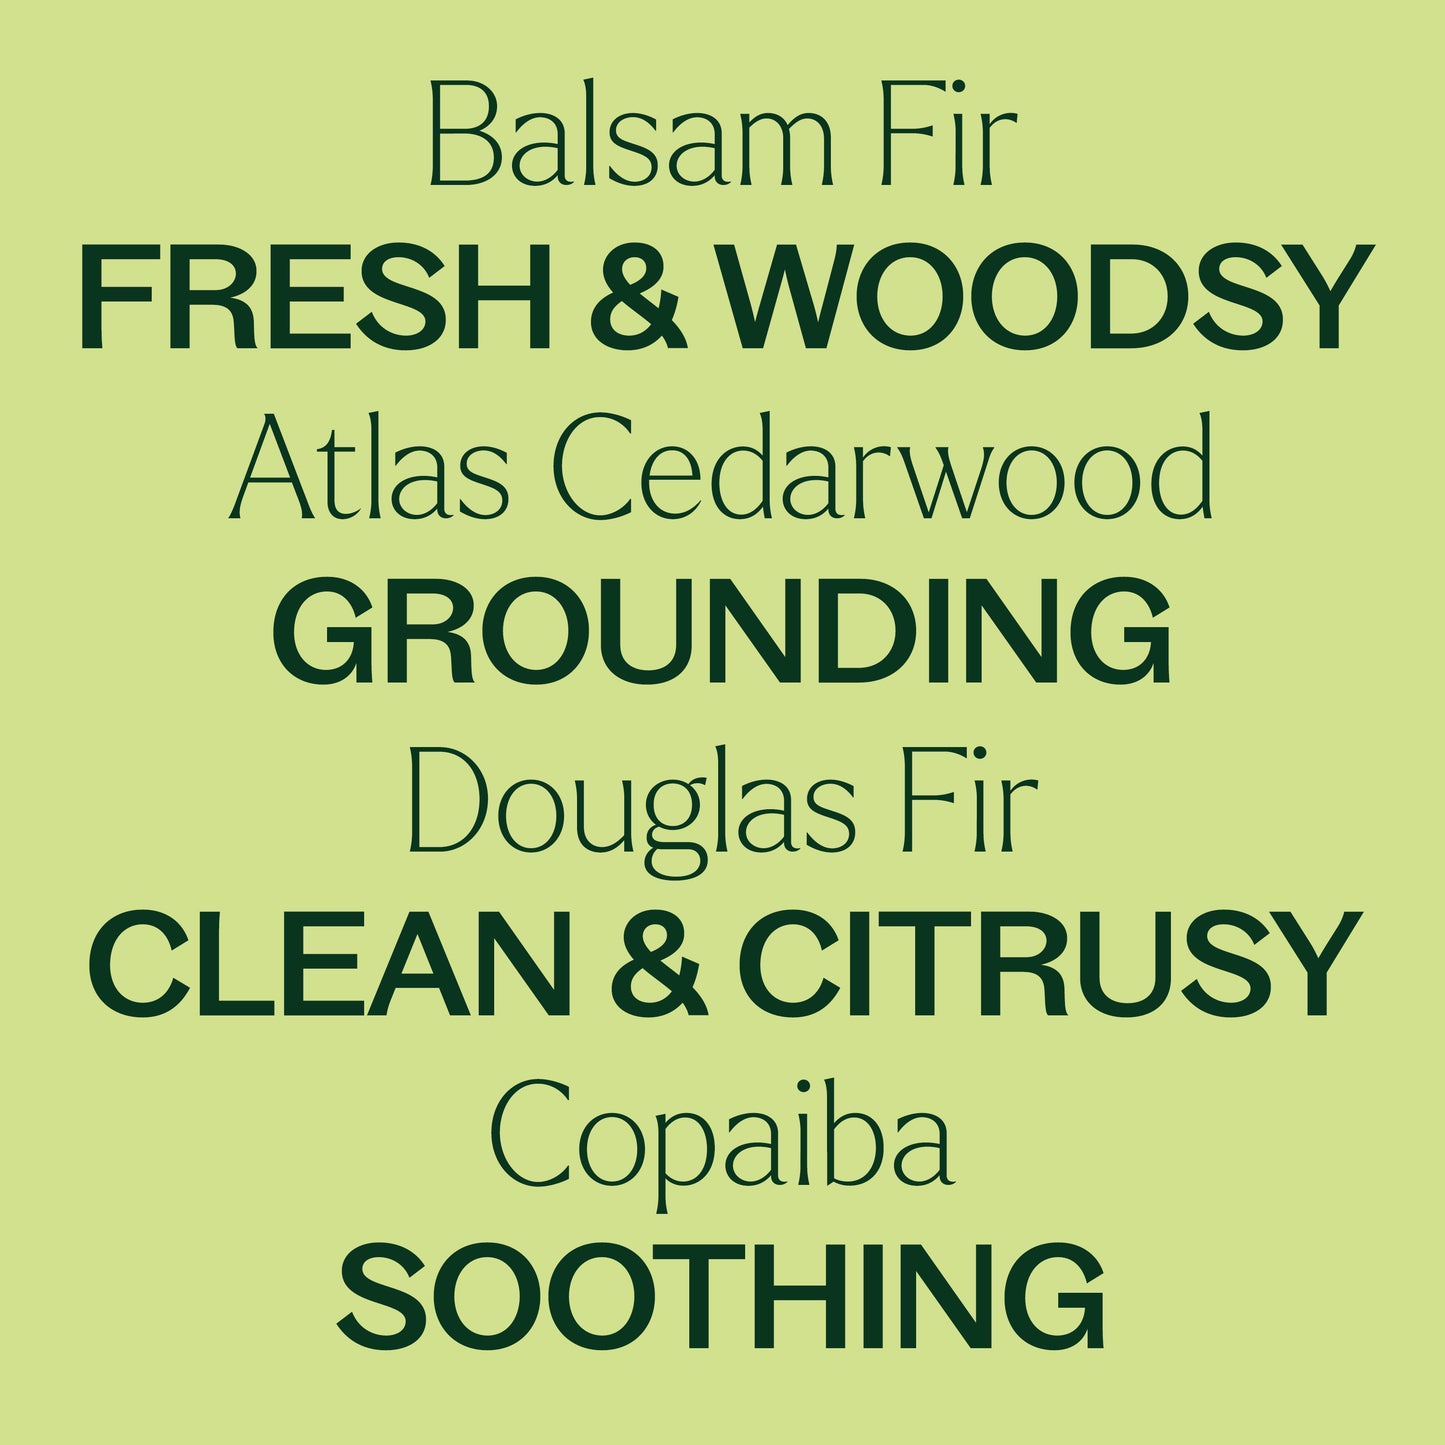 balsam fir, atlas cedarwood, douglas fir, copaiba. Fresh & woodsy, grounding, clean & citrusy, soothing